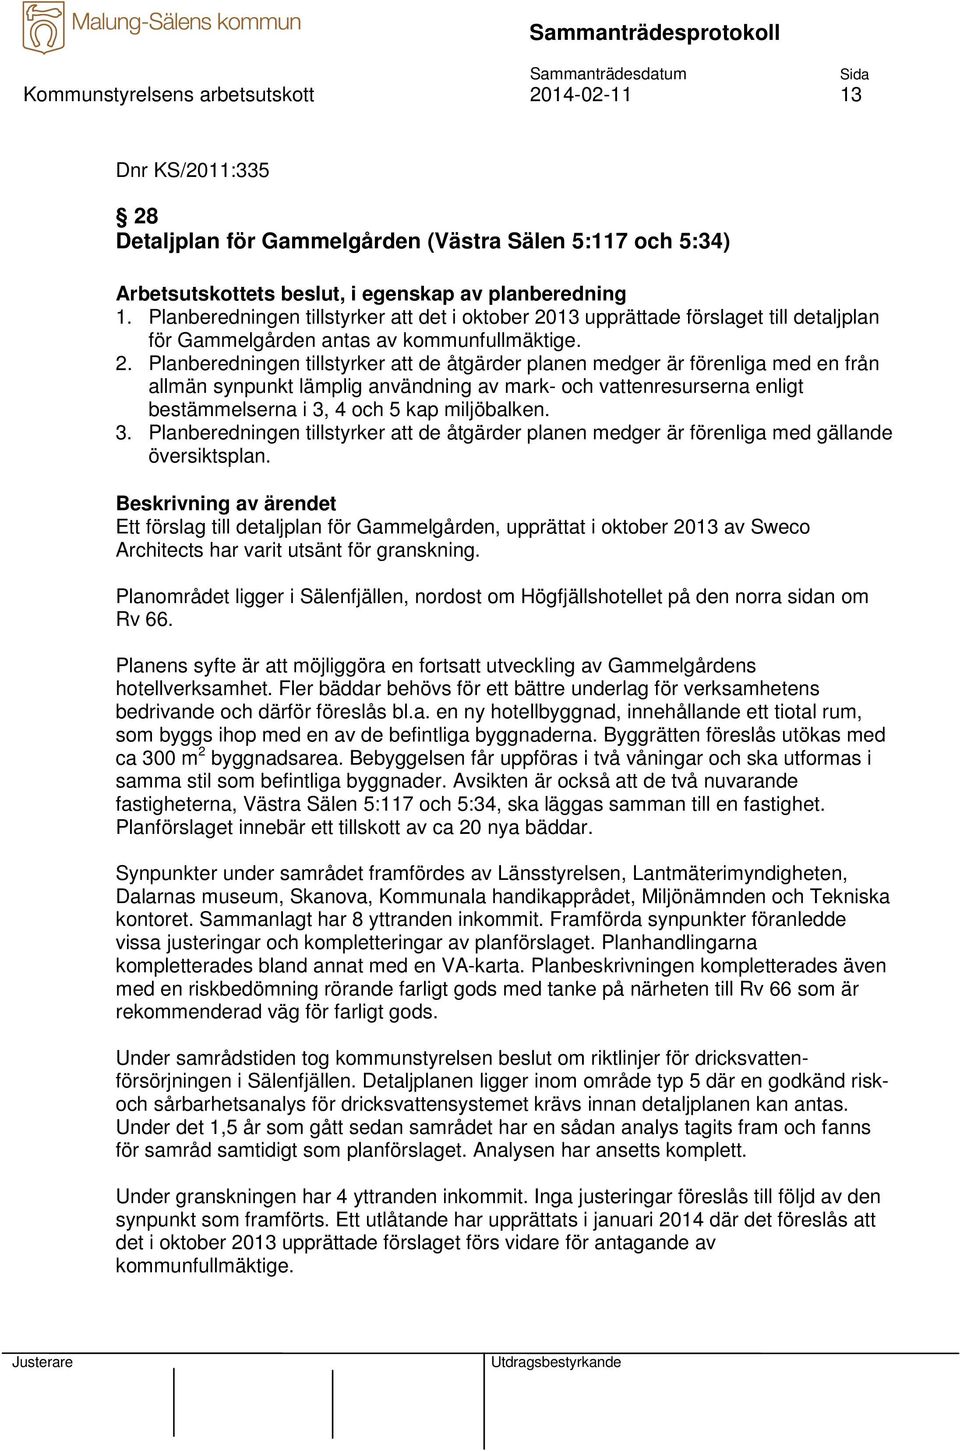 13 upprättade förslaget till detaljplan för Gammelgården antas av kommunfullmäktige. 2.